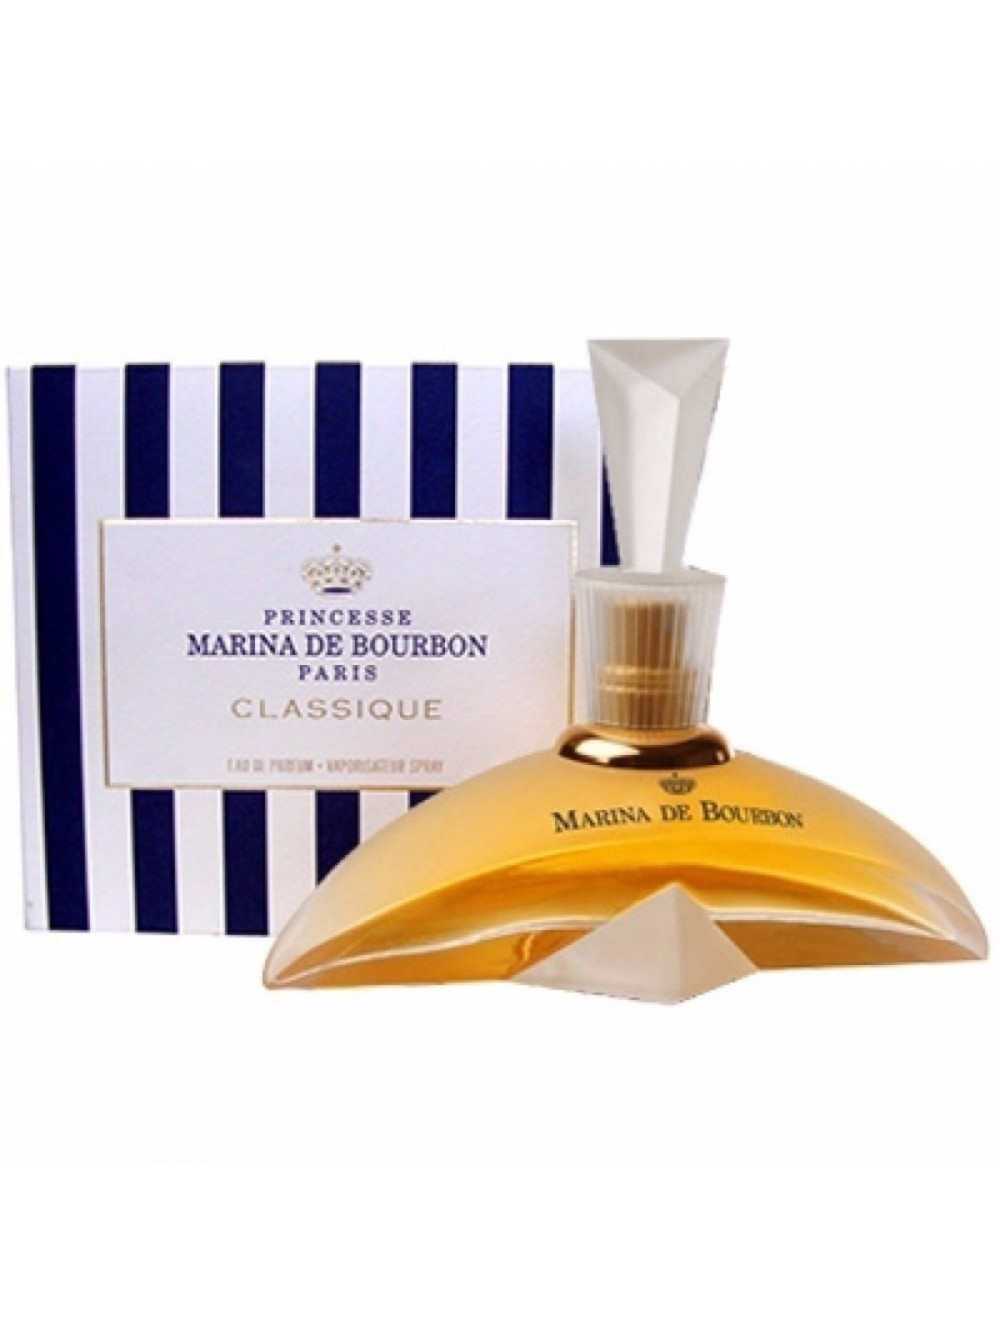 Perfume Marina de Bourbon Classique Tradicional Feminino 100ml - Luxúria  Perfumaria Atacado - Perfumes Importados Originais